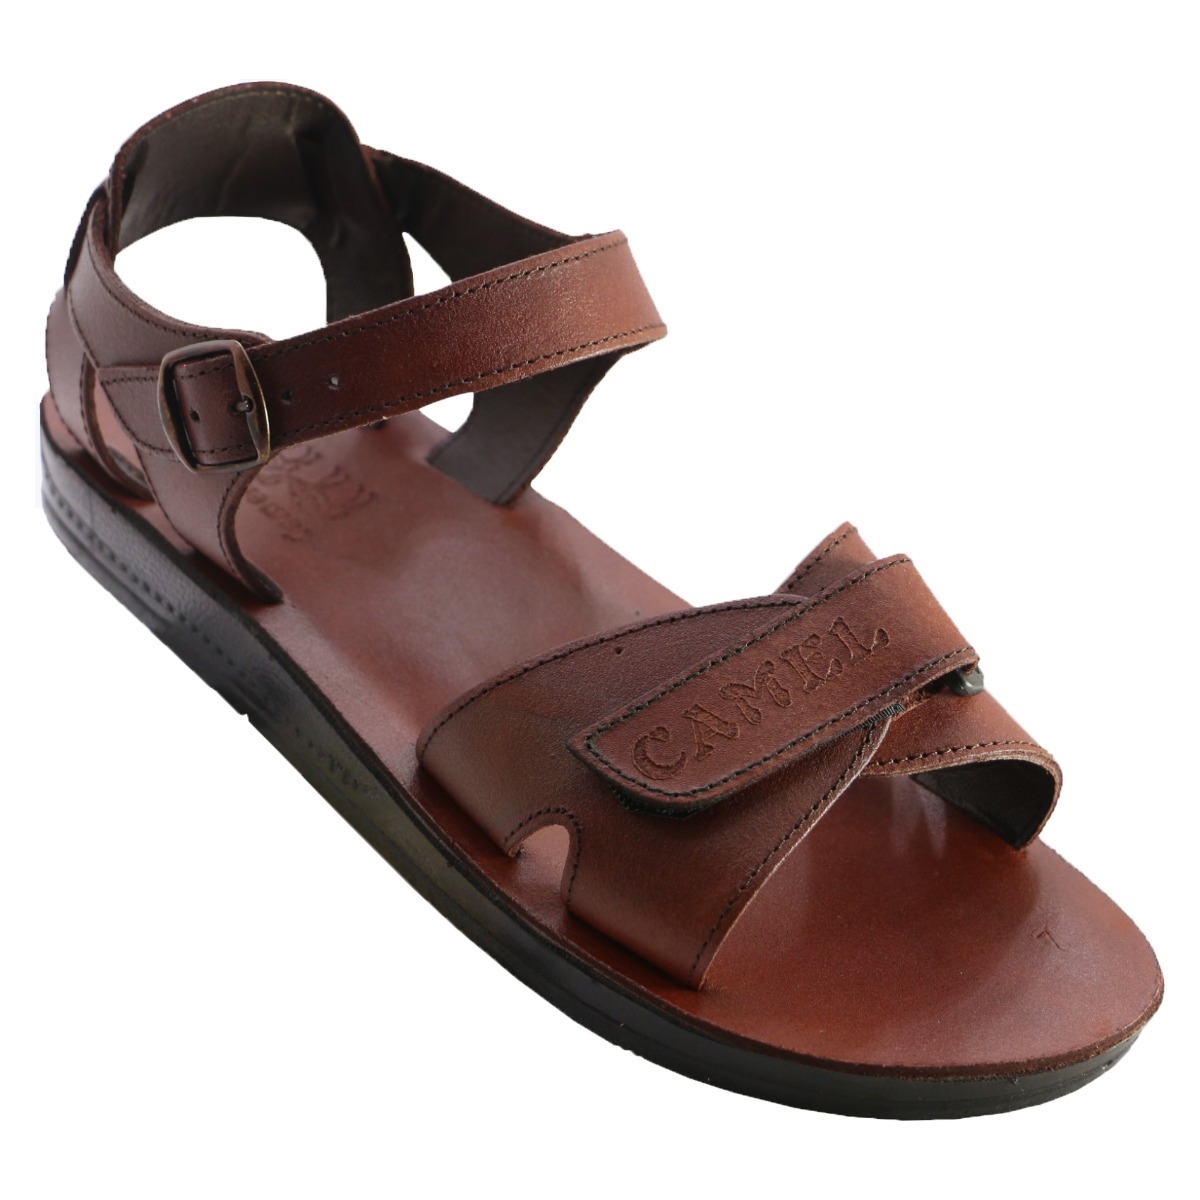 Mendel Handmade Men's Leather Sandals - 1